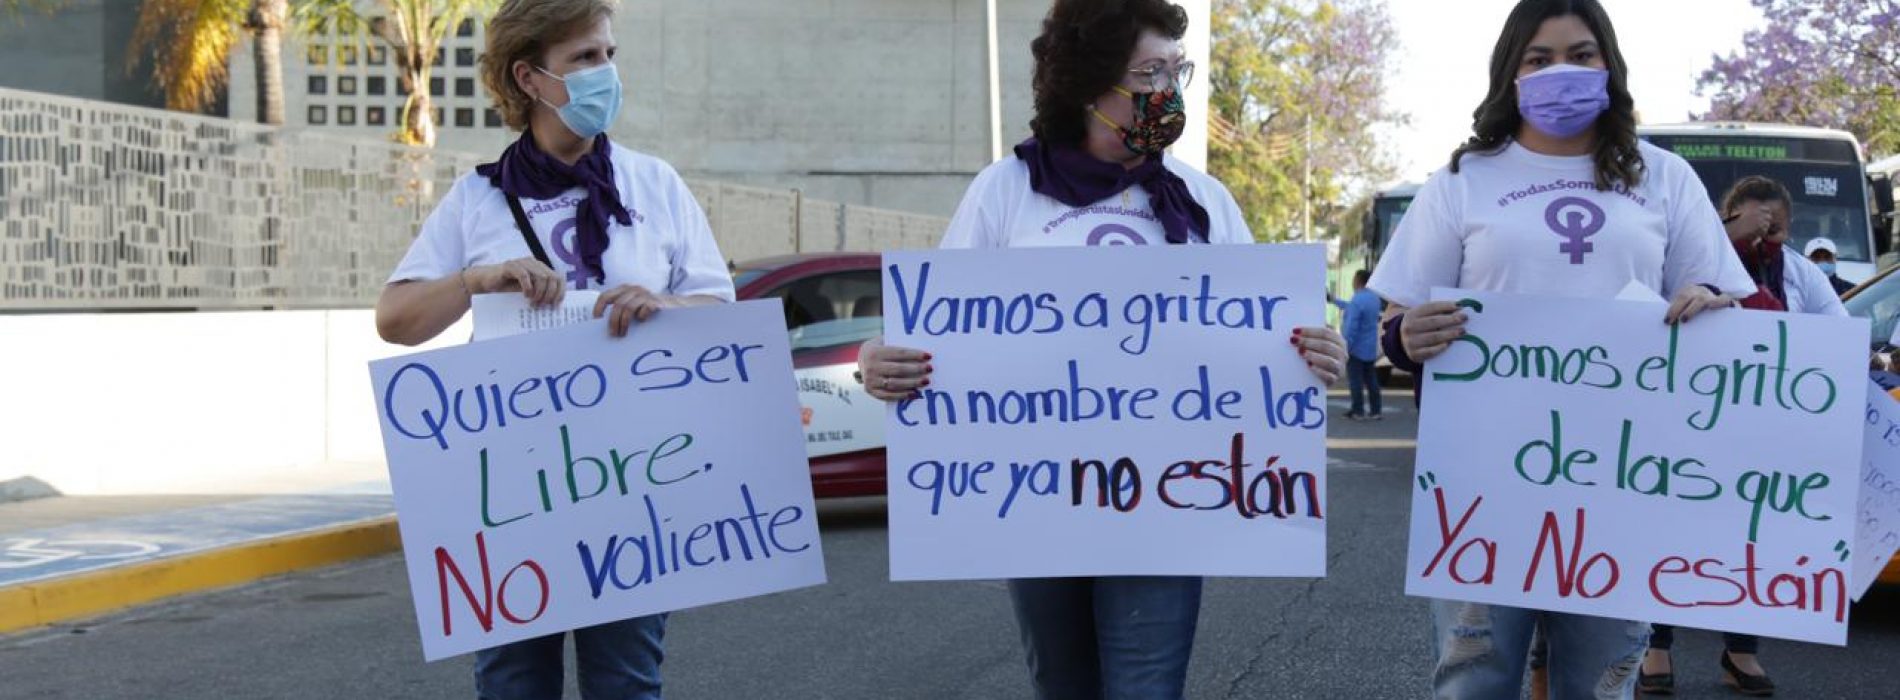 Realizan marcha caravana en rechazo a la violencia de género y feminicidios en Oaxaca